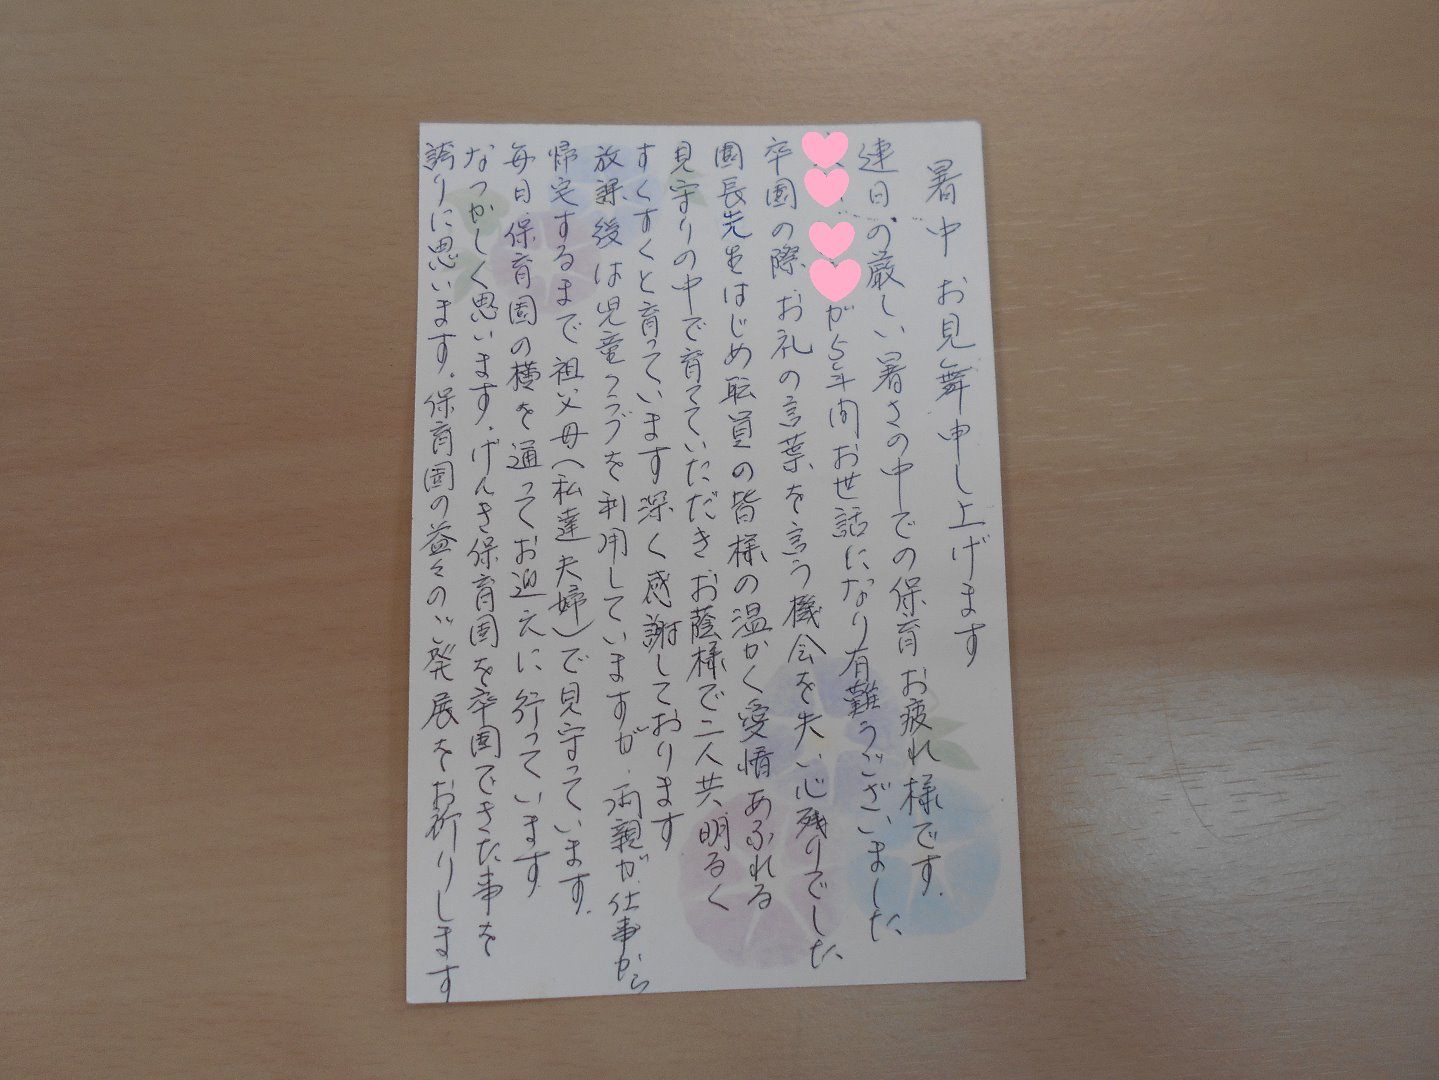 上 幼稚園児への手紙 189767幼稚園児への手紙